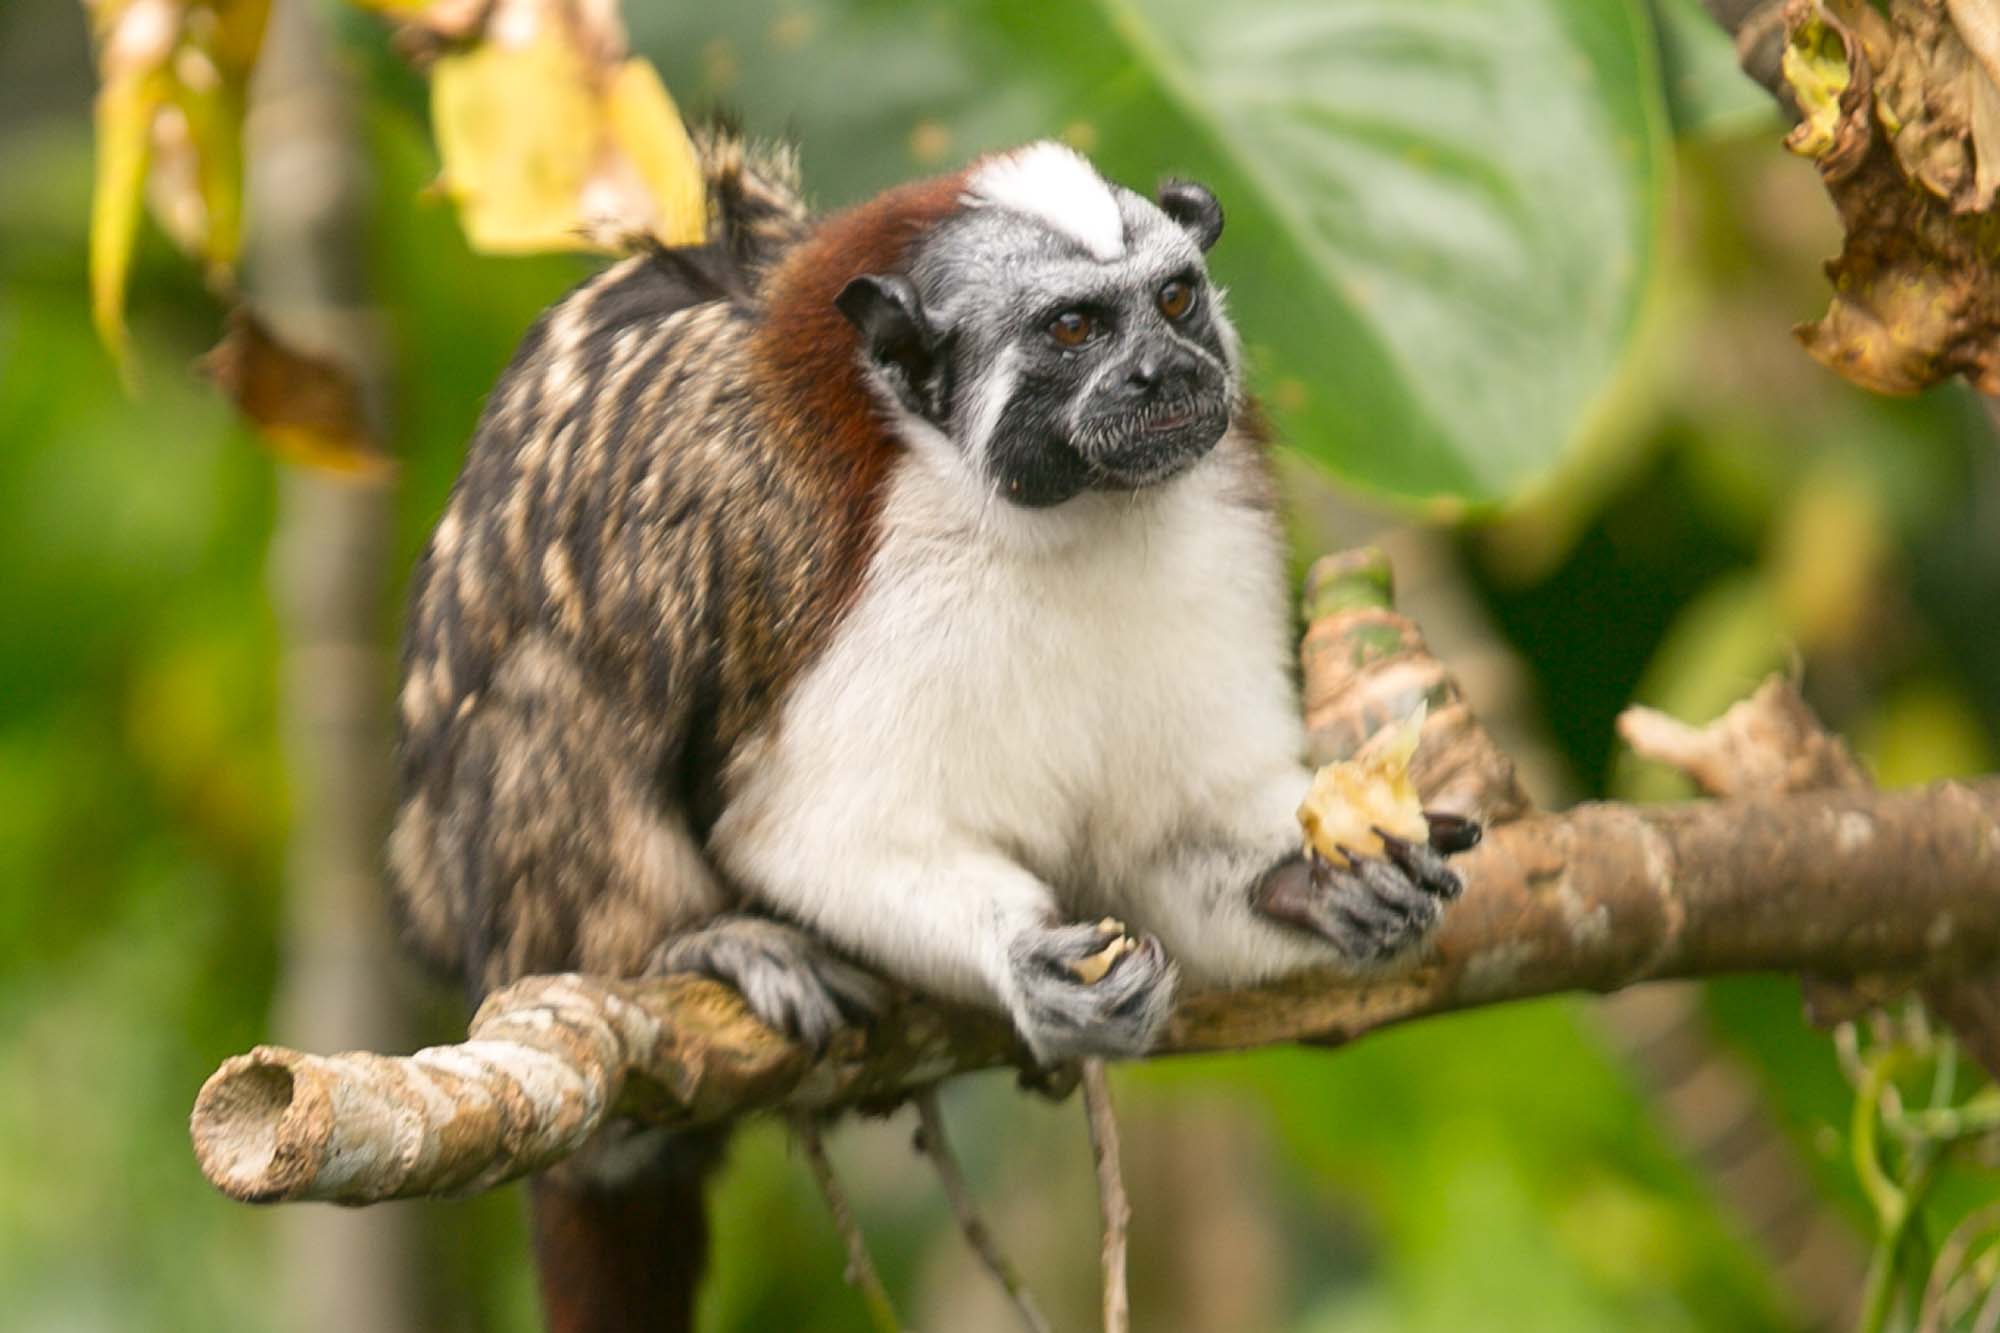 Titi or Tamarin monkey closeup on Monkey Island in Panama